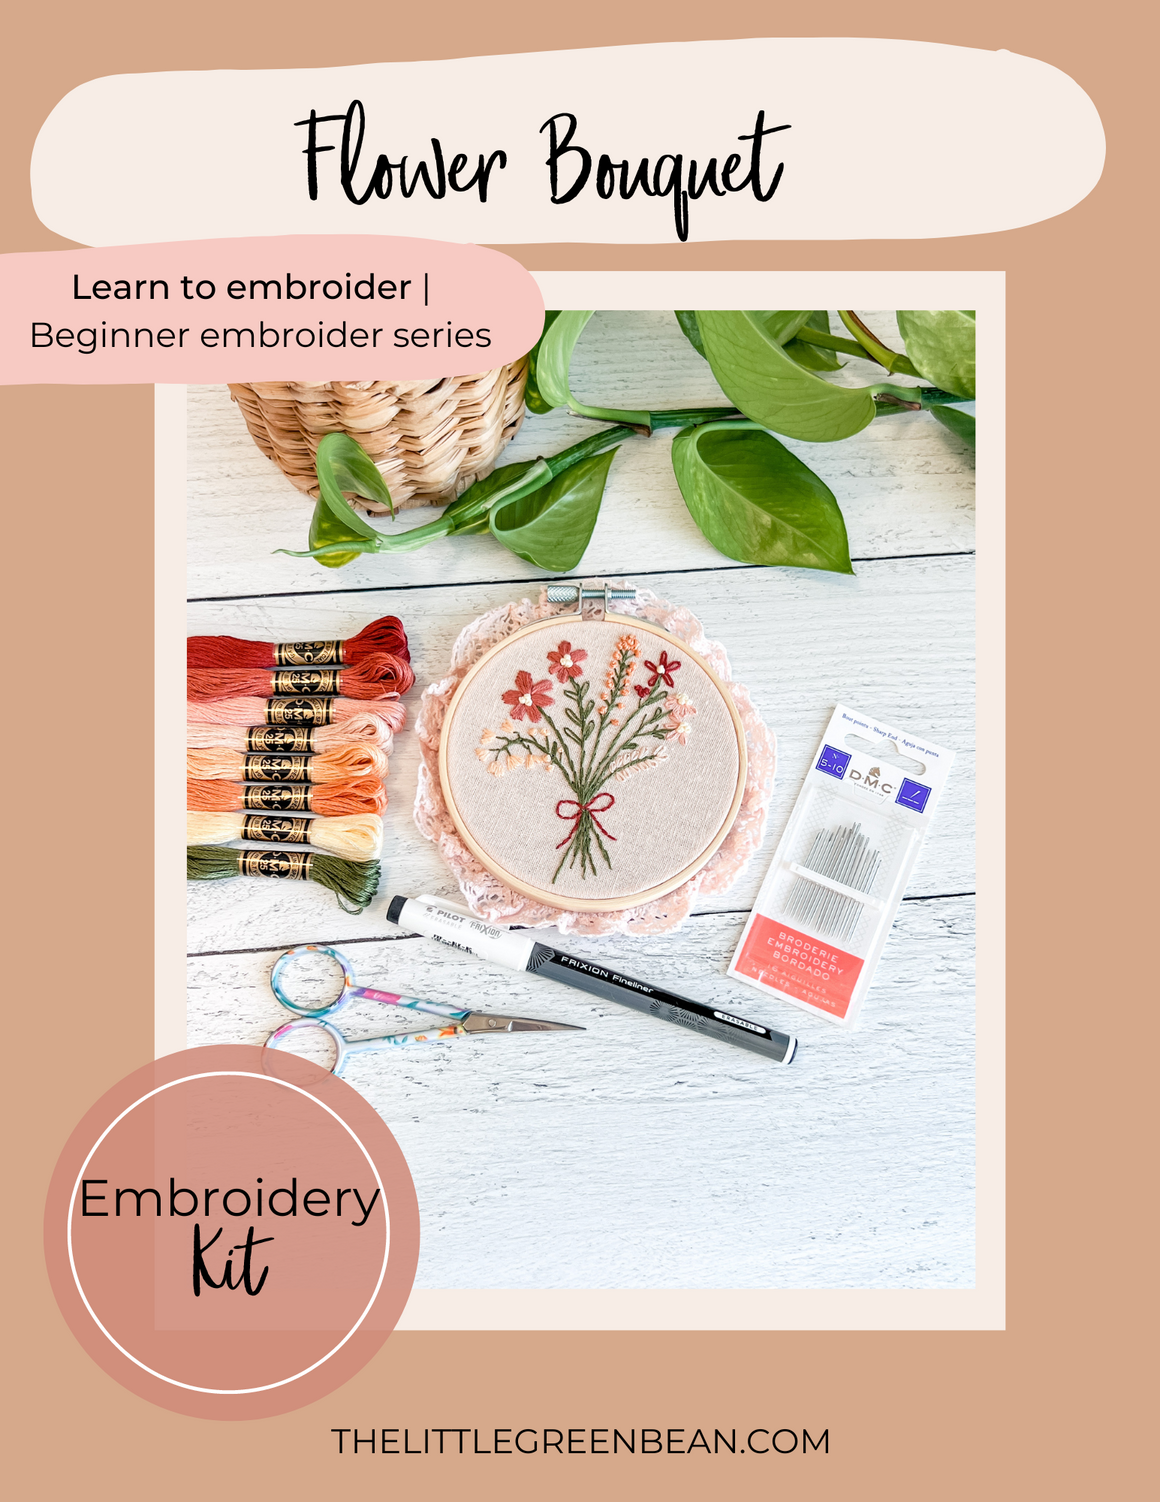 Flower Bouquet | Build your own kit